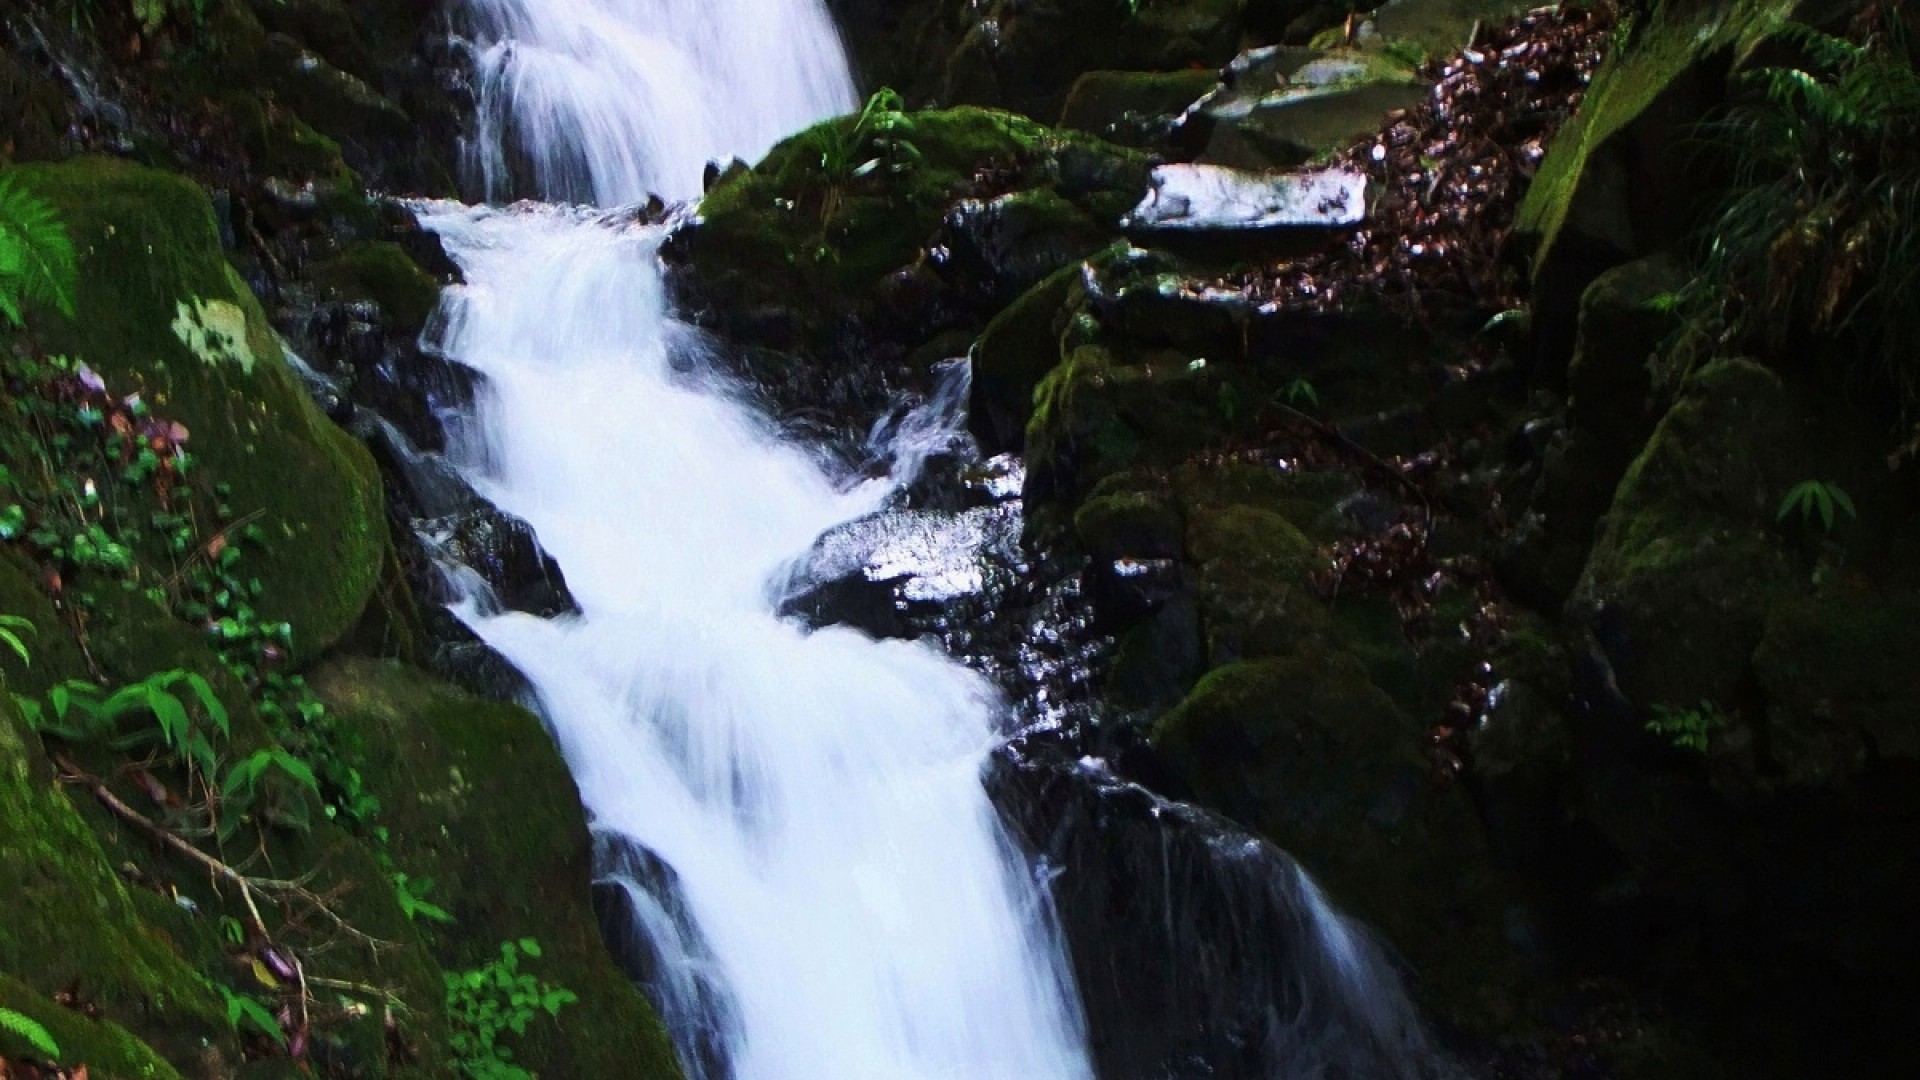 Kyorai Waterfall